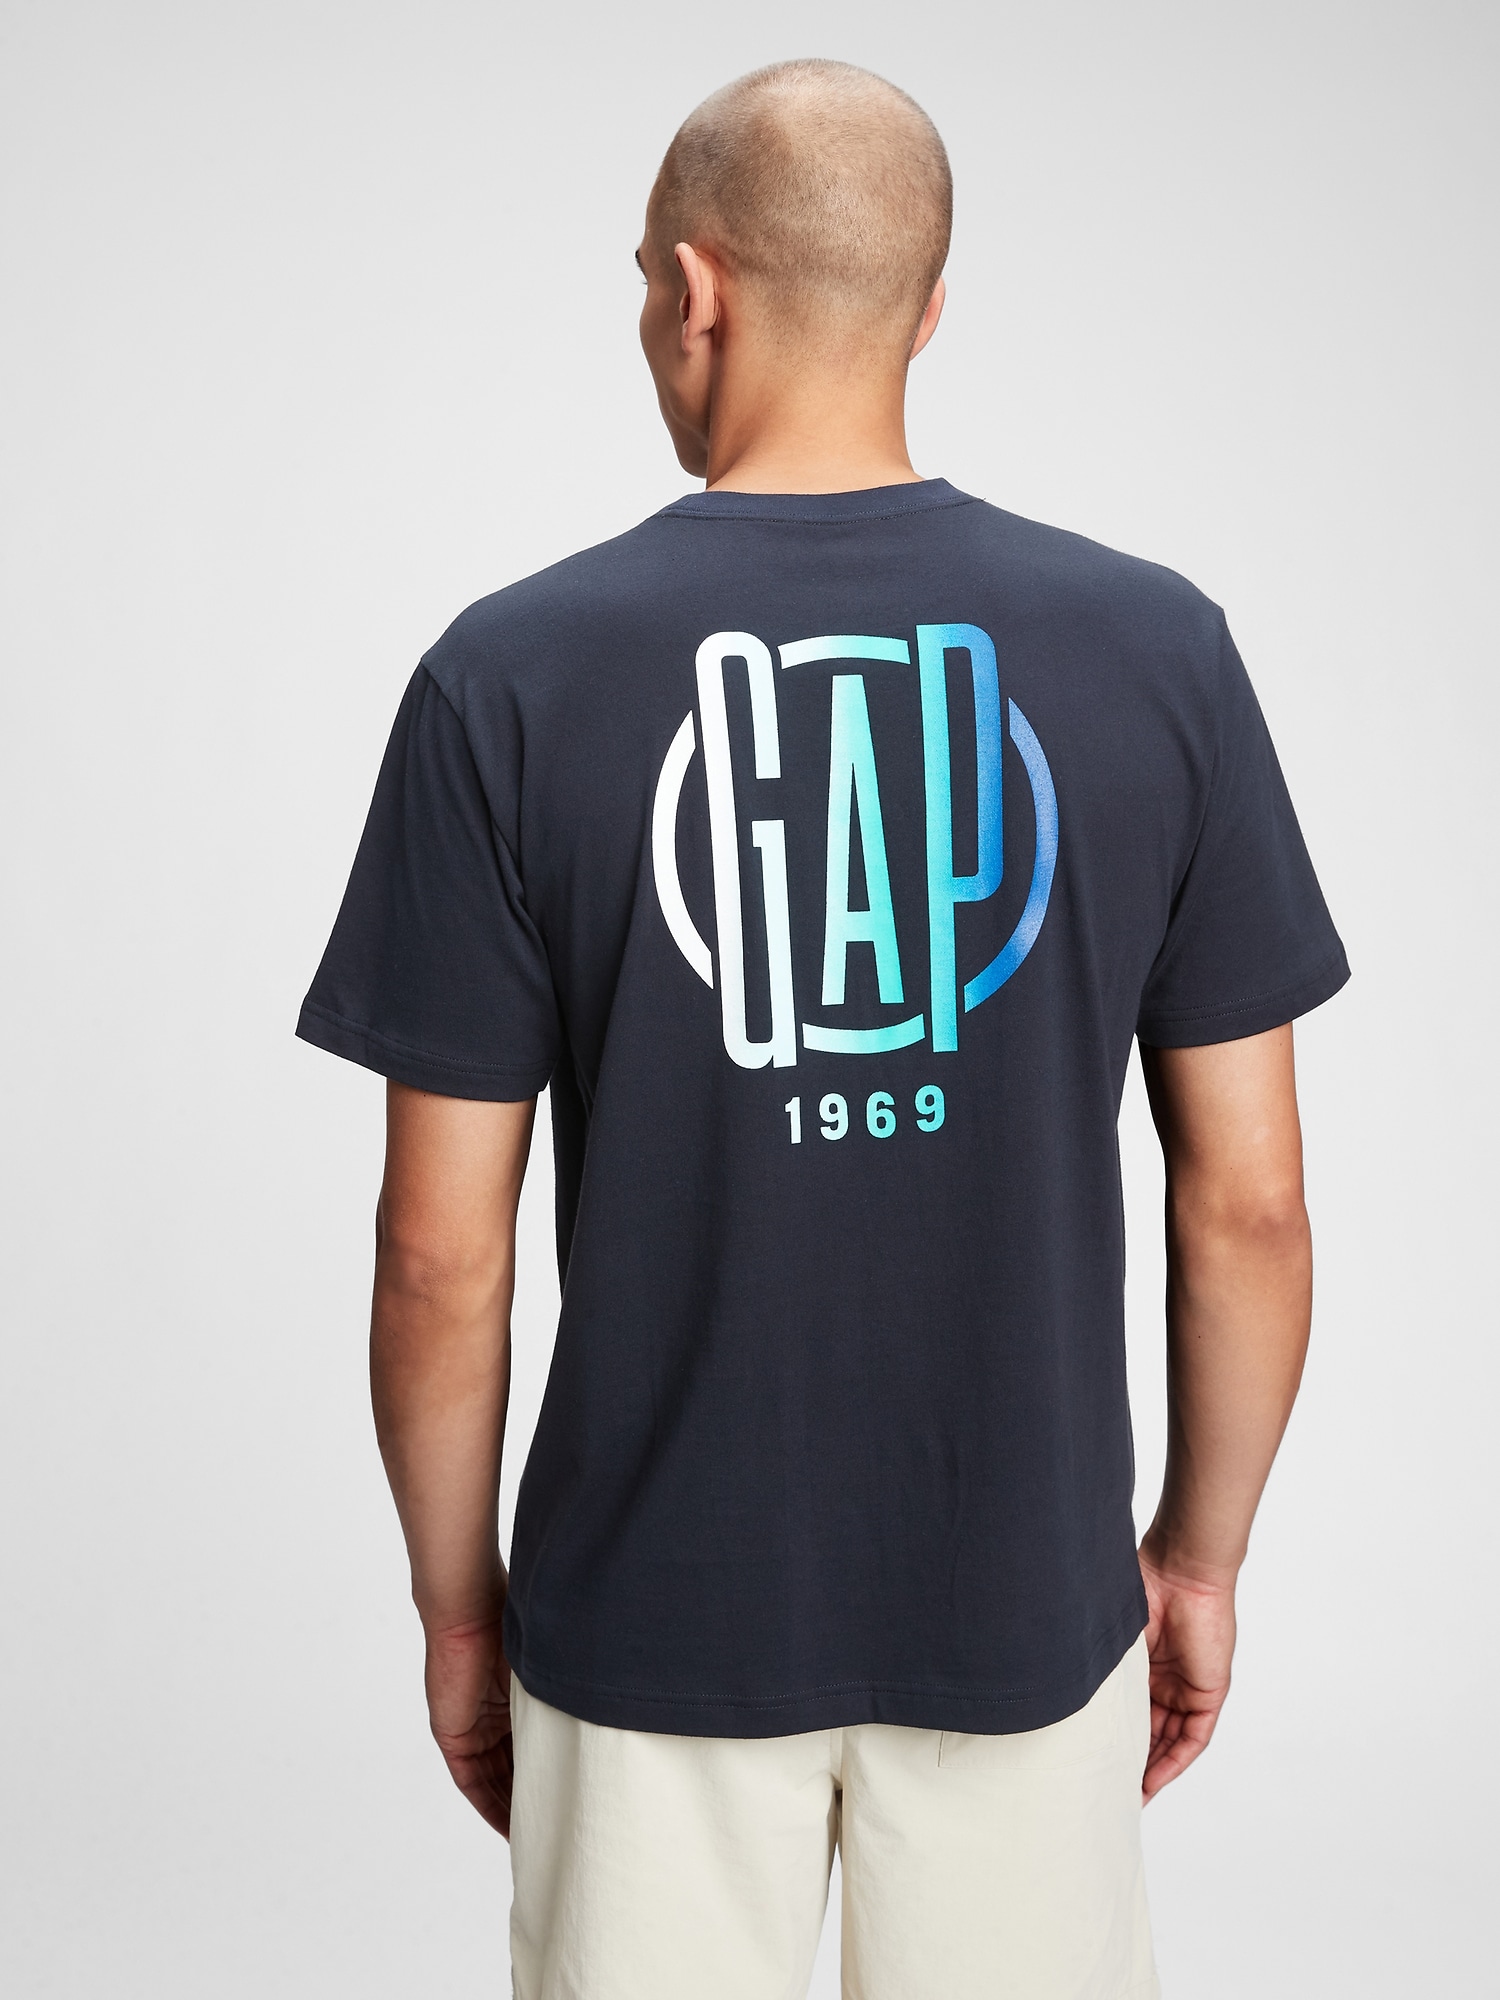 Gap Logo T-Shirt. 2